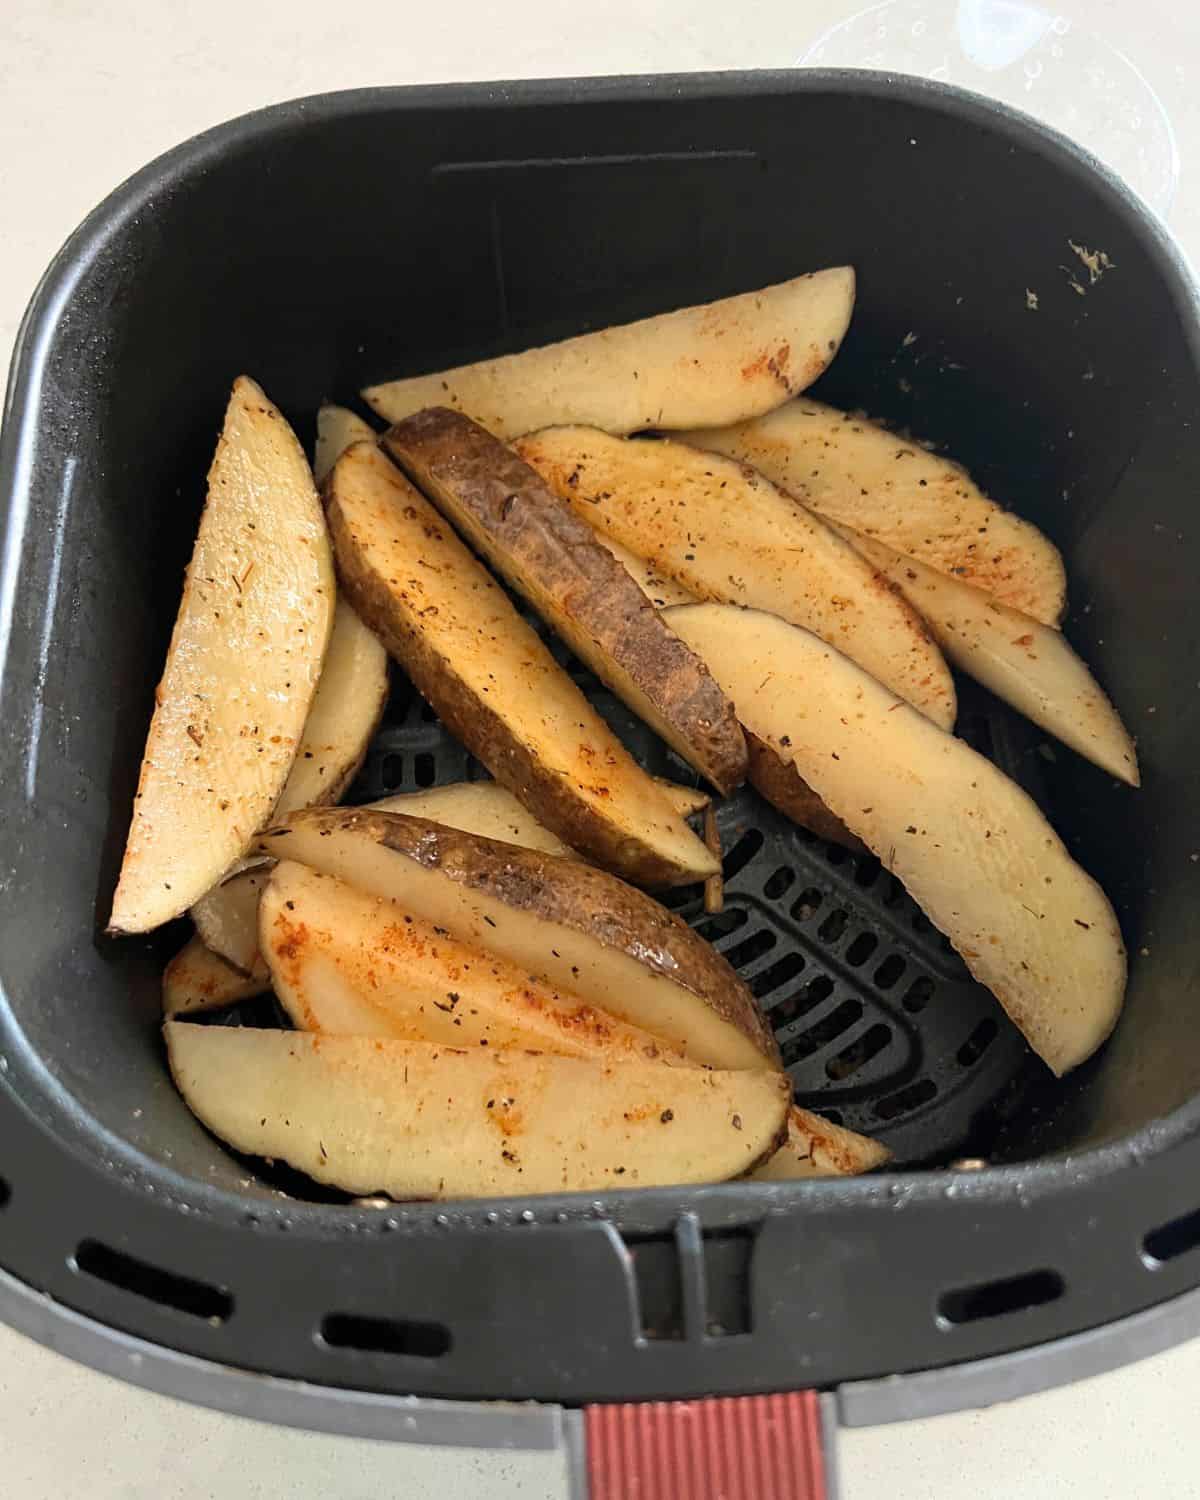 Seasoned potato wedges in air fryer basket. 